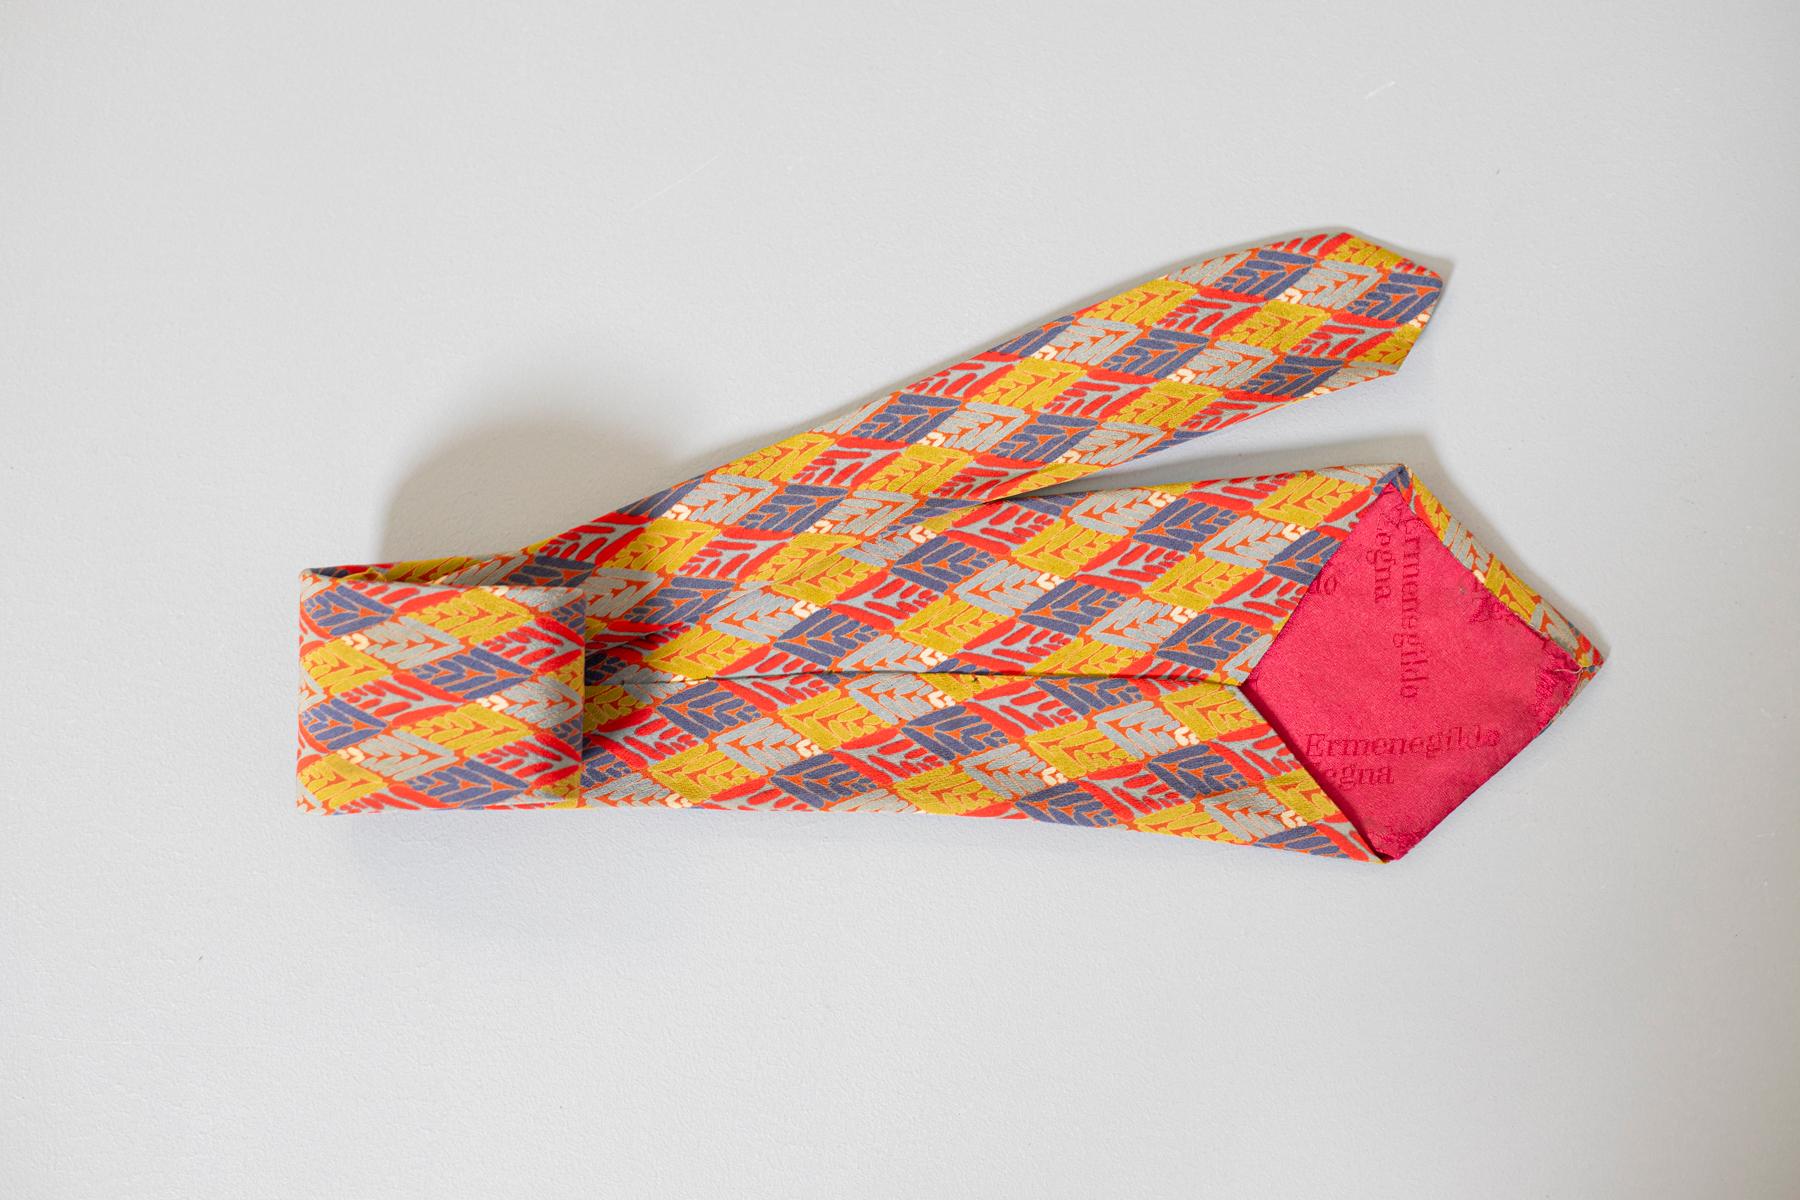 Elegante Krawatte aus der Mitte des Jahrhunderts aus italienischer Produktion. Es ist aus 100% Seide gefertigt. Verziert mit kleinen farbigen Rauten, die aus kleinen geometrischen Formen bestehen. Perfekt zur Jeans und zum eleganten Anzug zu